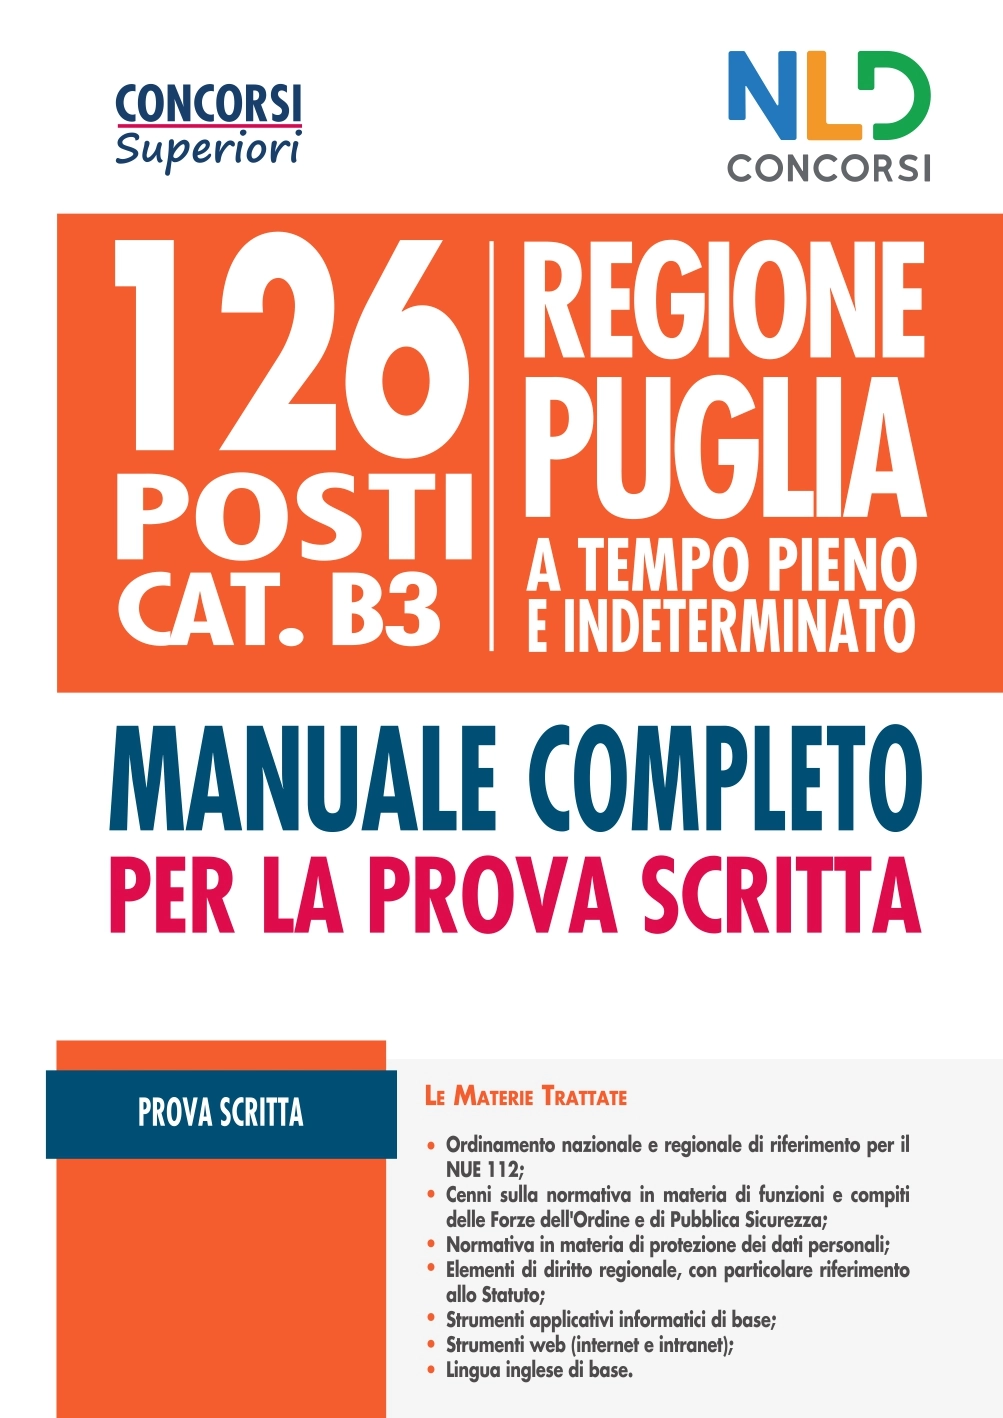 Concorso Regione Puglia 2021: Manuale Completo per 126 Posti Ctg B